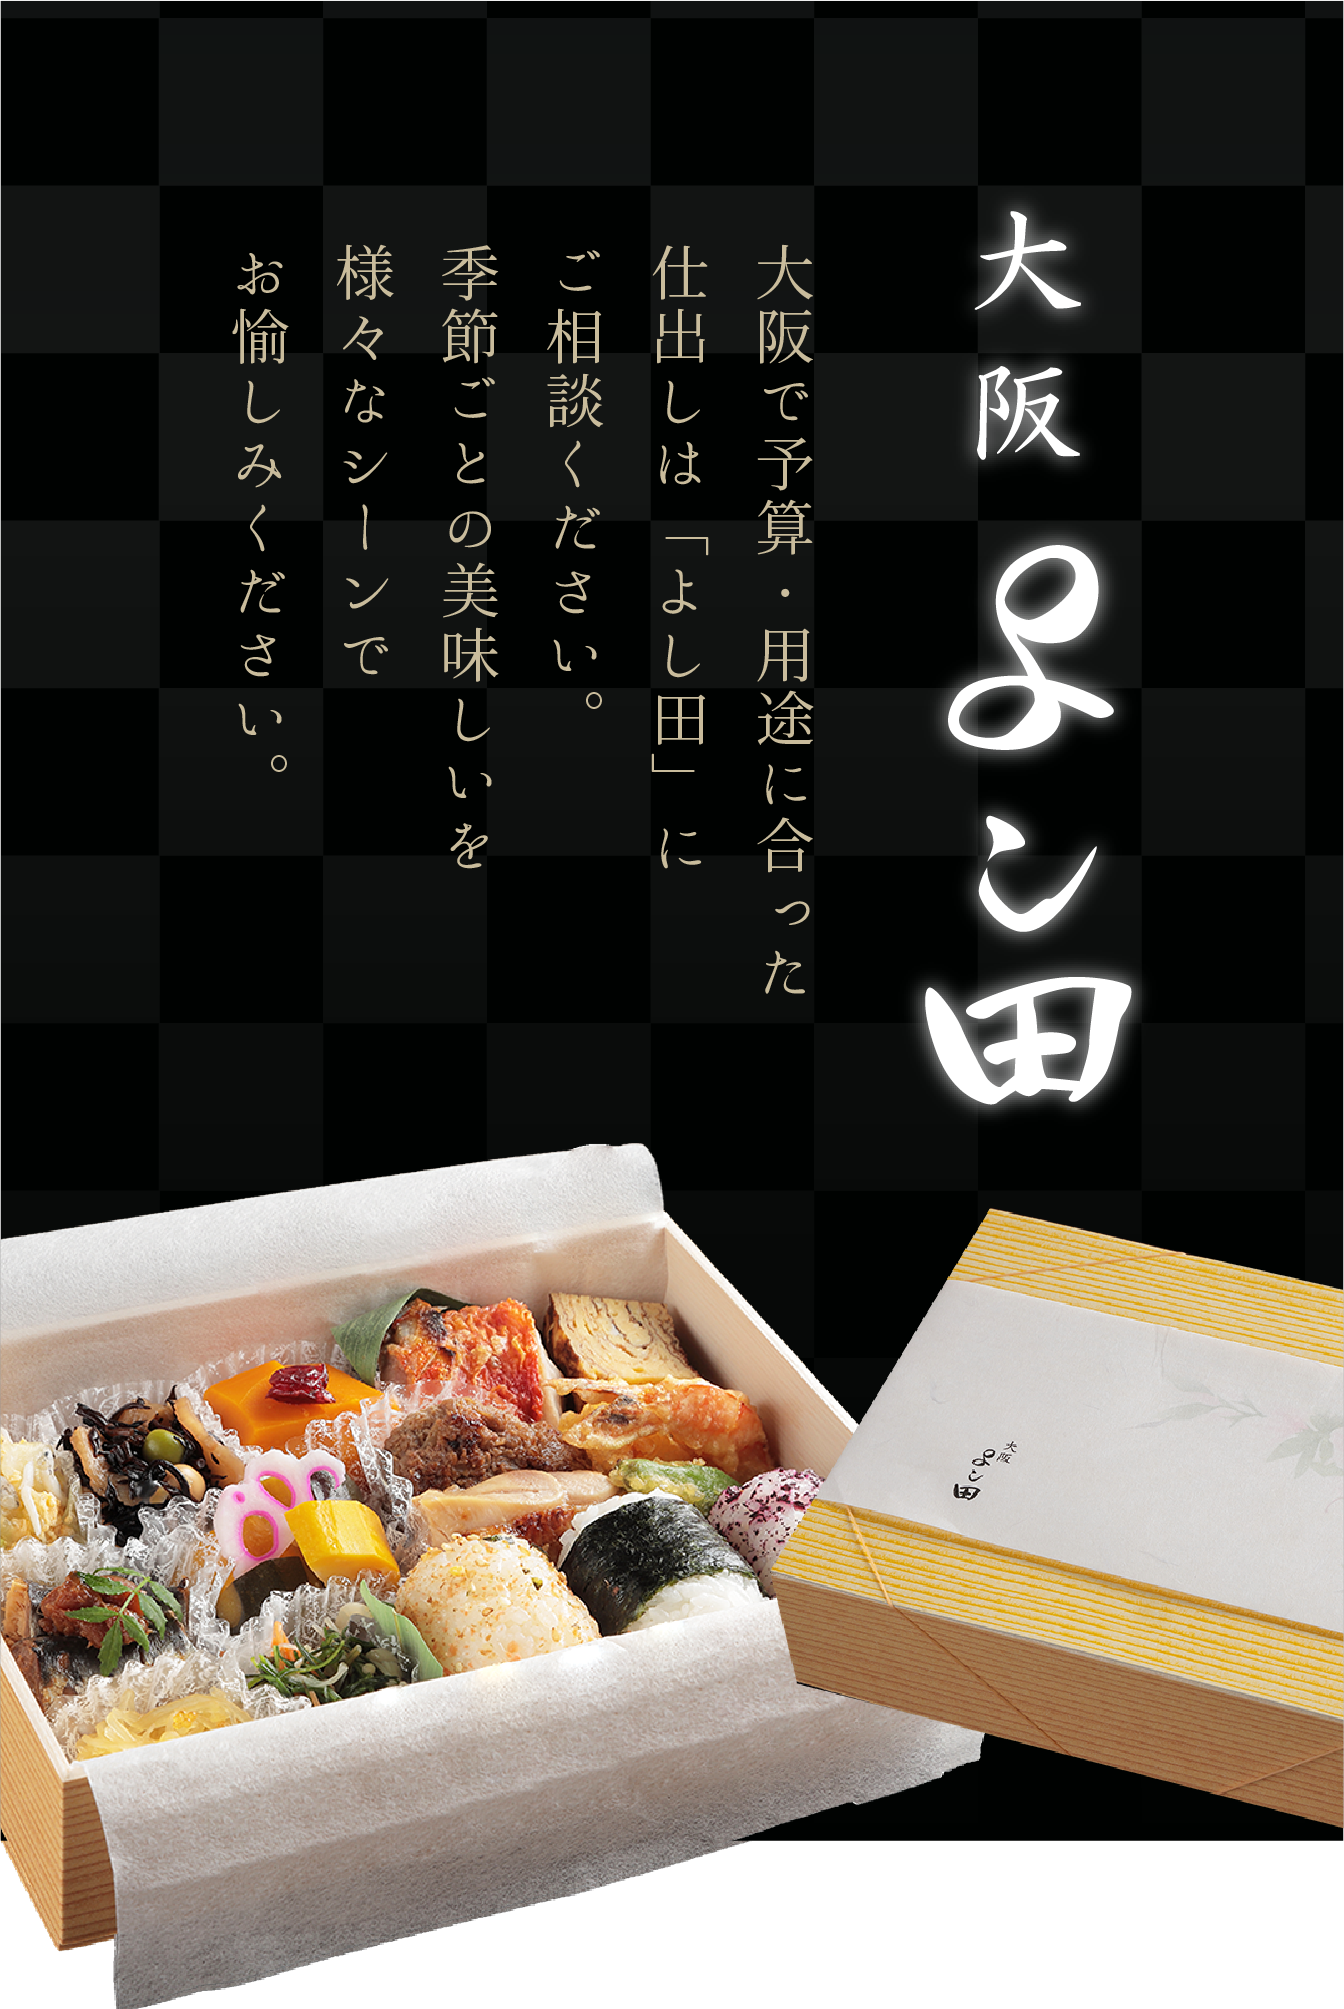 大阪で予算・用途にあった仕出しは「よし田」にご相談ください。季節ごとの美味しいを様々なシーンでお愉しみください。